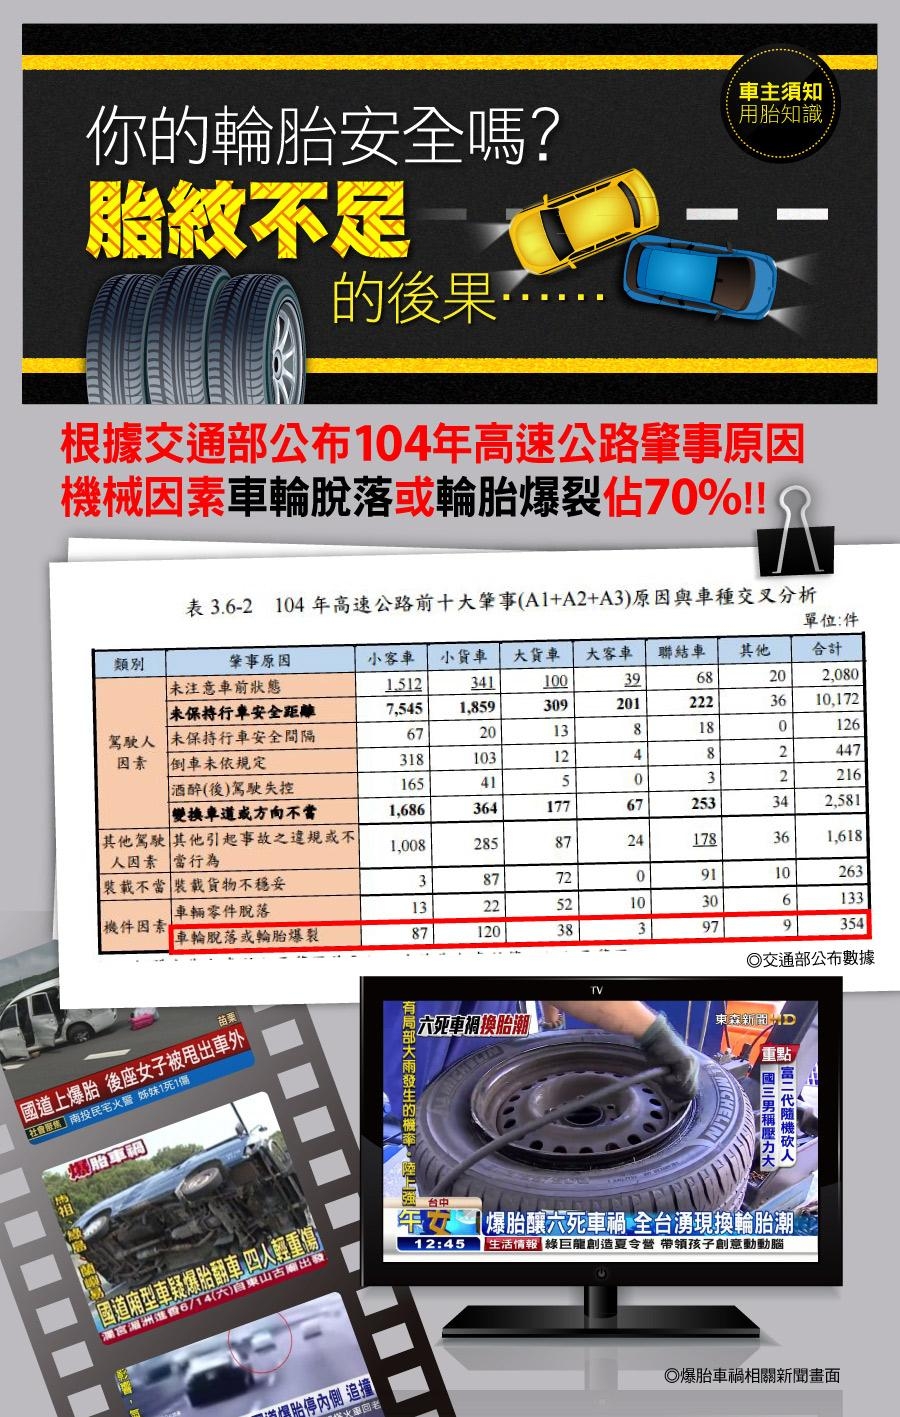 【將軍】ALTIMAX GS5_195/55/16吋舒適操控輪胎_送專業安裝(GS5)